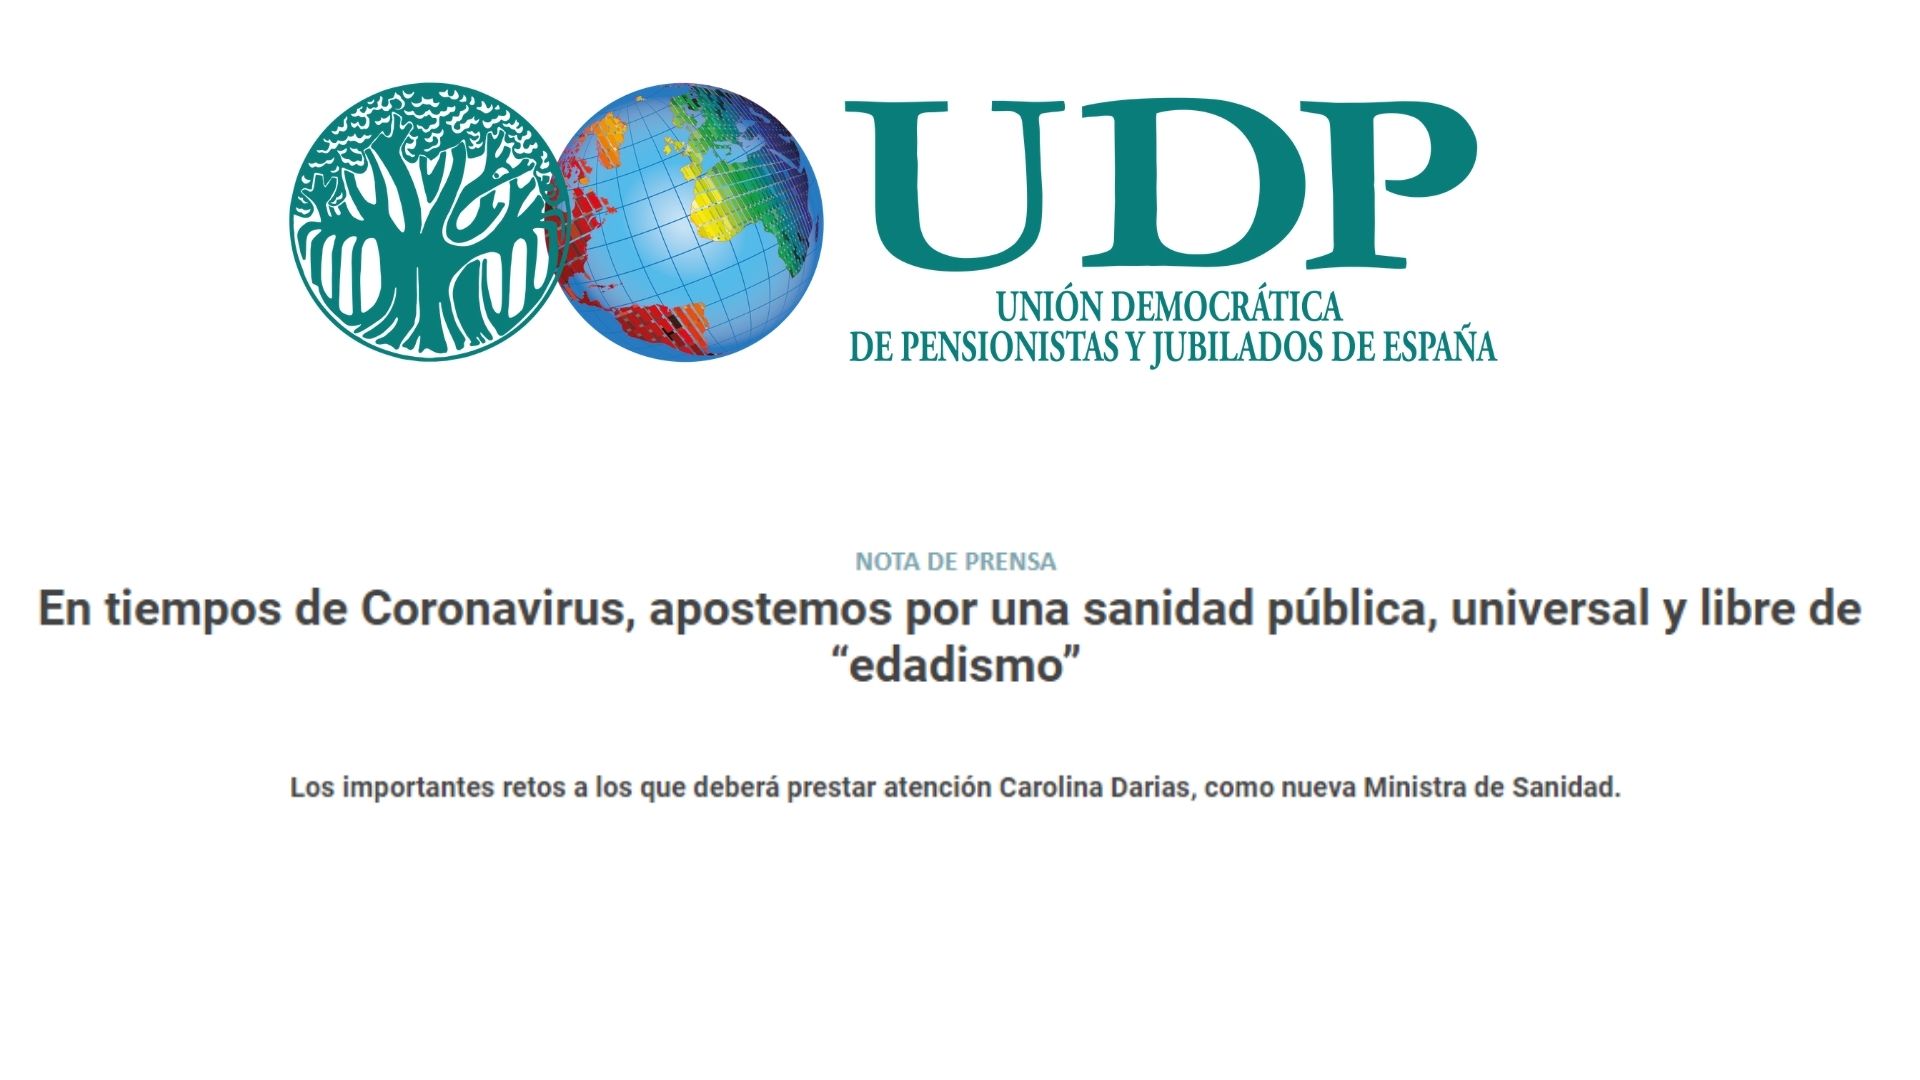 UDP_Las personas mayores en la sanidad pública